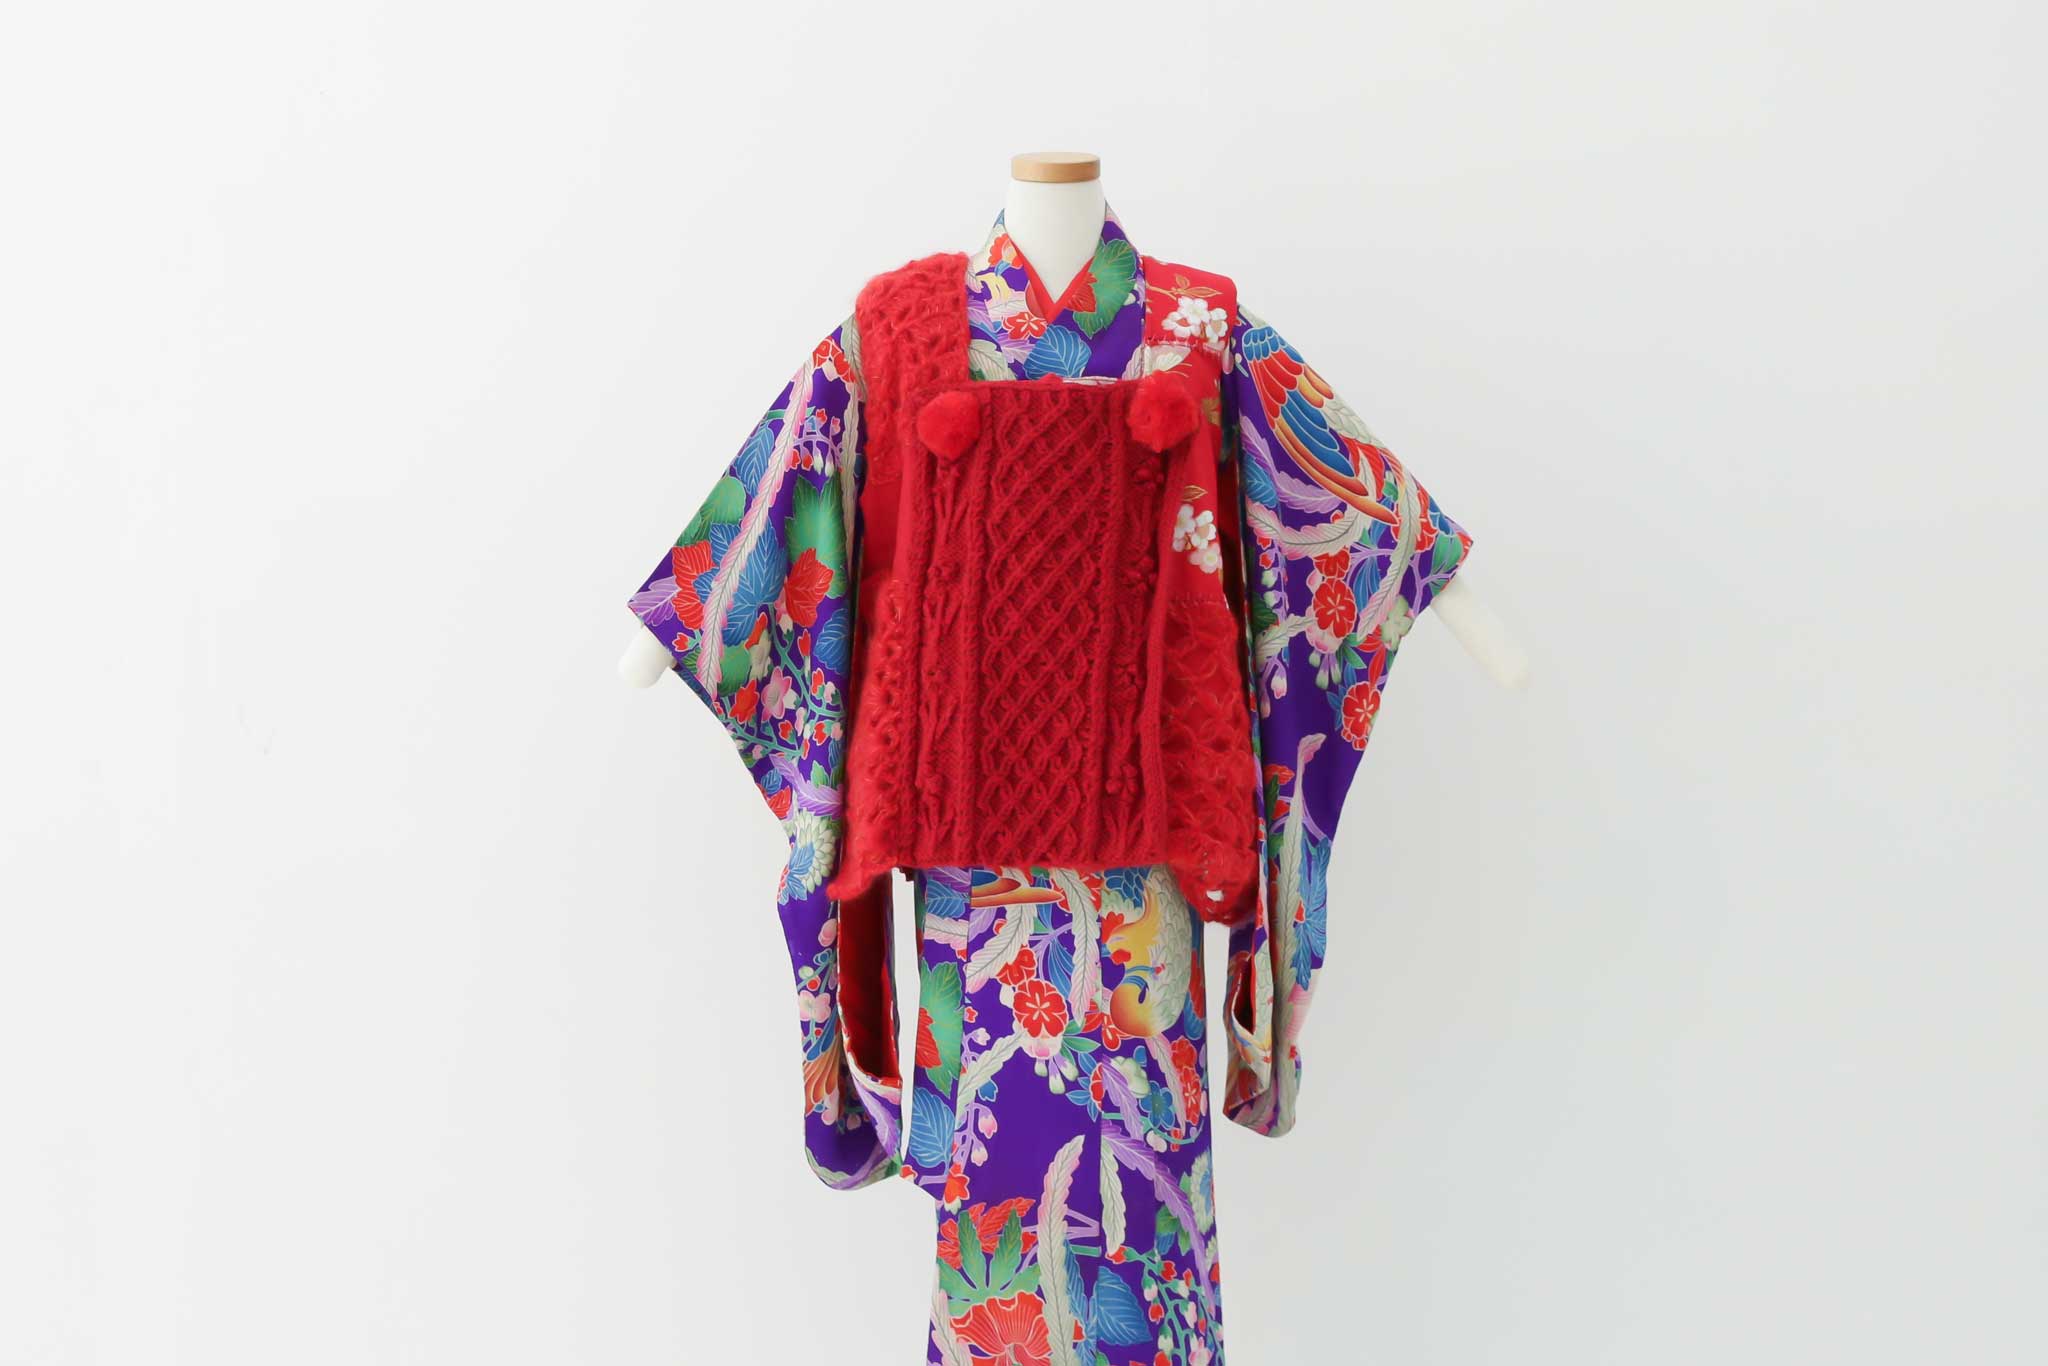 ちょっと珍しい手編みニットの被布 | 子供のおしゃれな衣装レンタル | heartmelt | キッズドレス&フォーマル